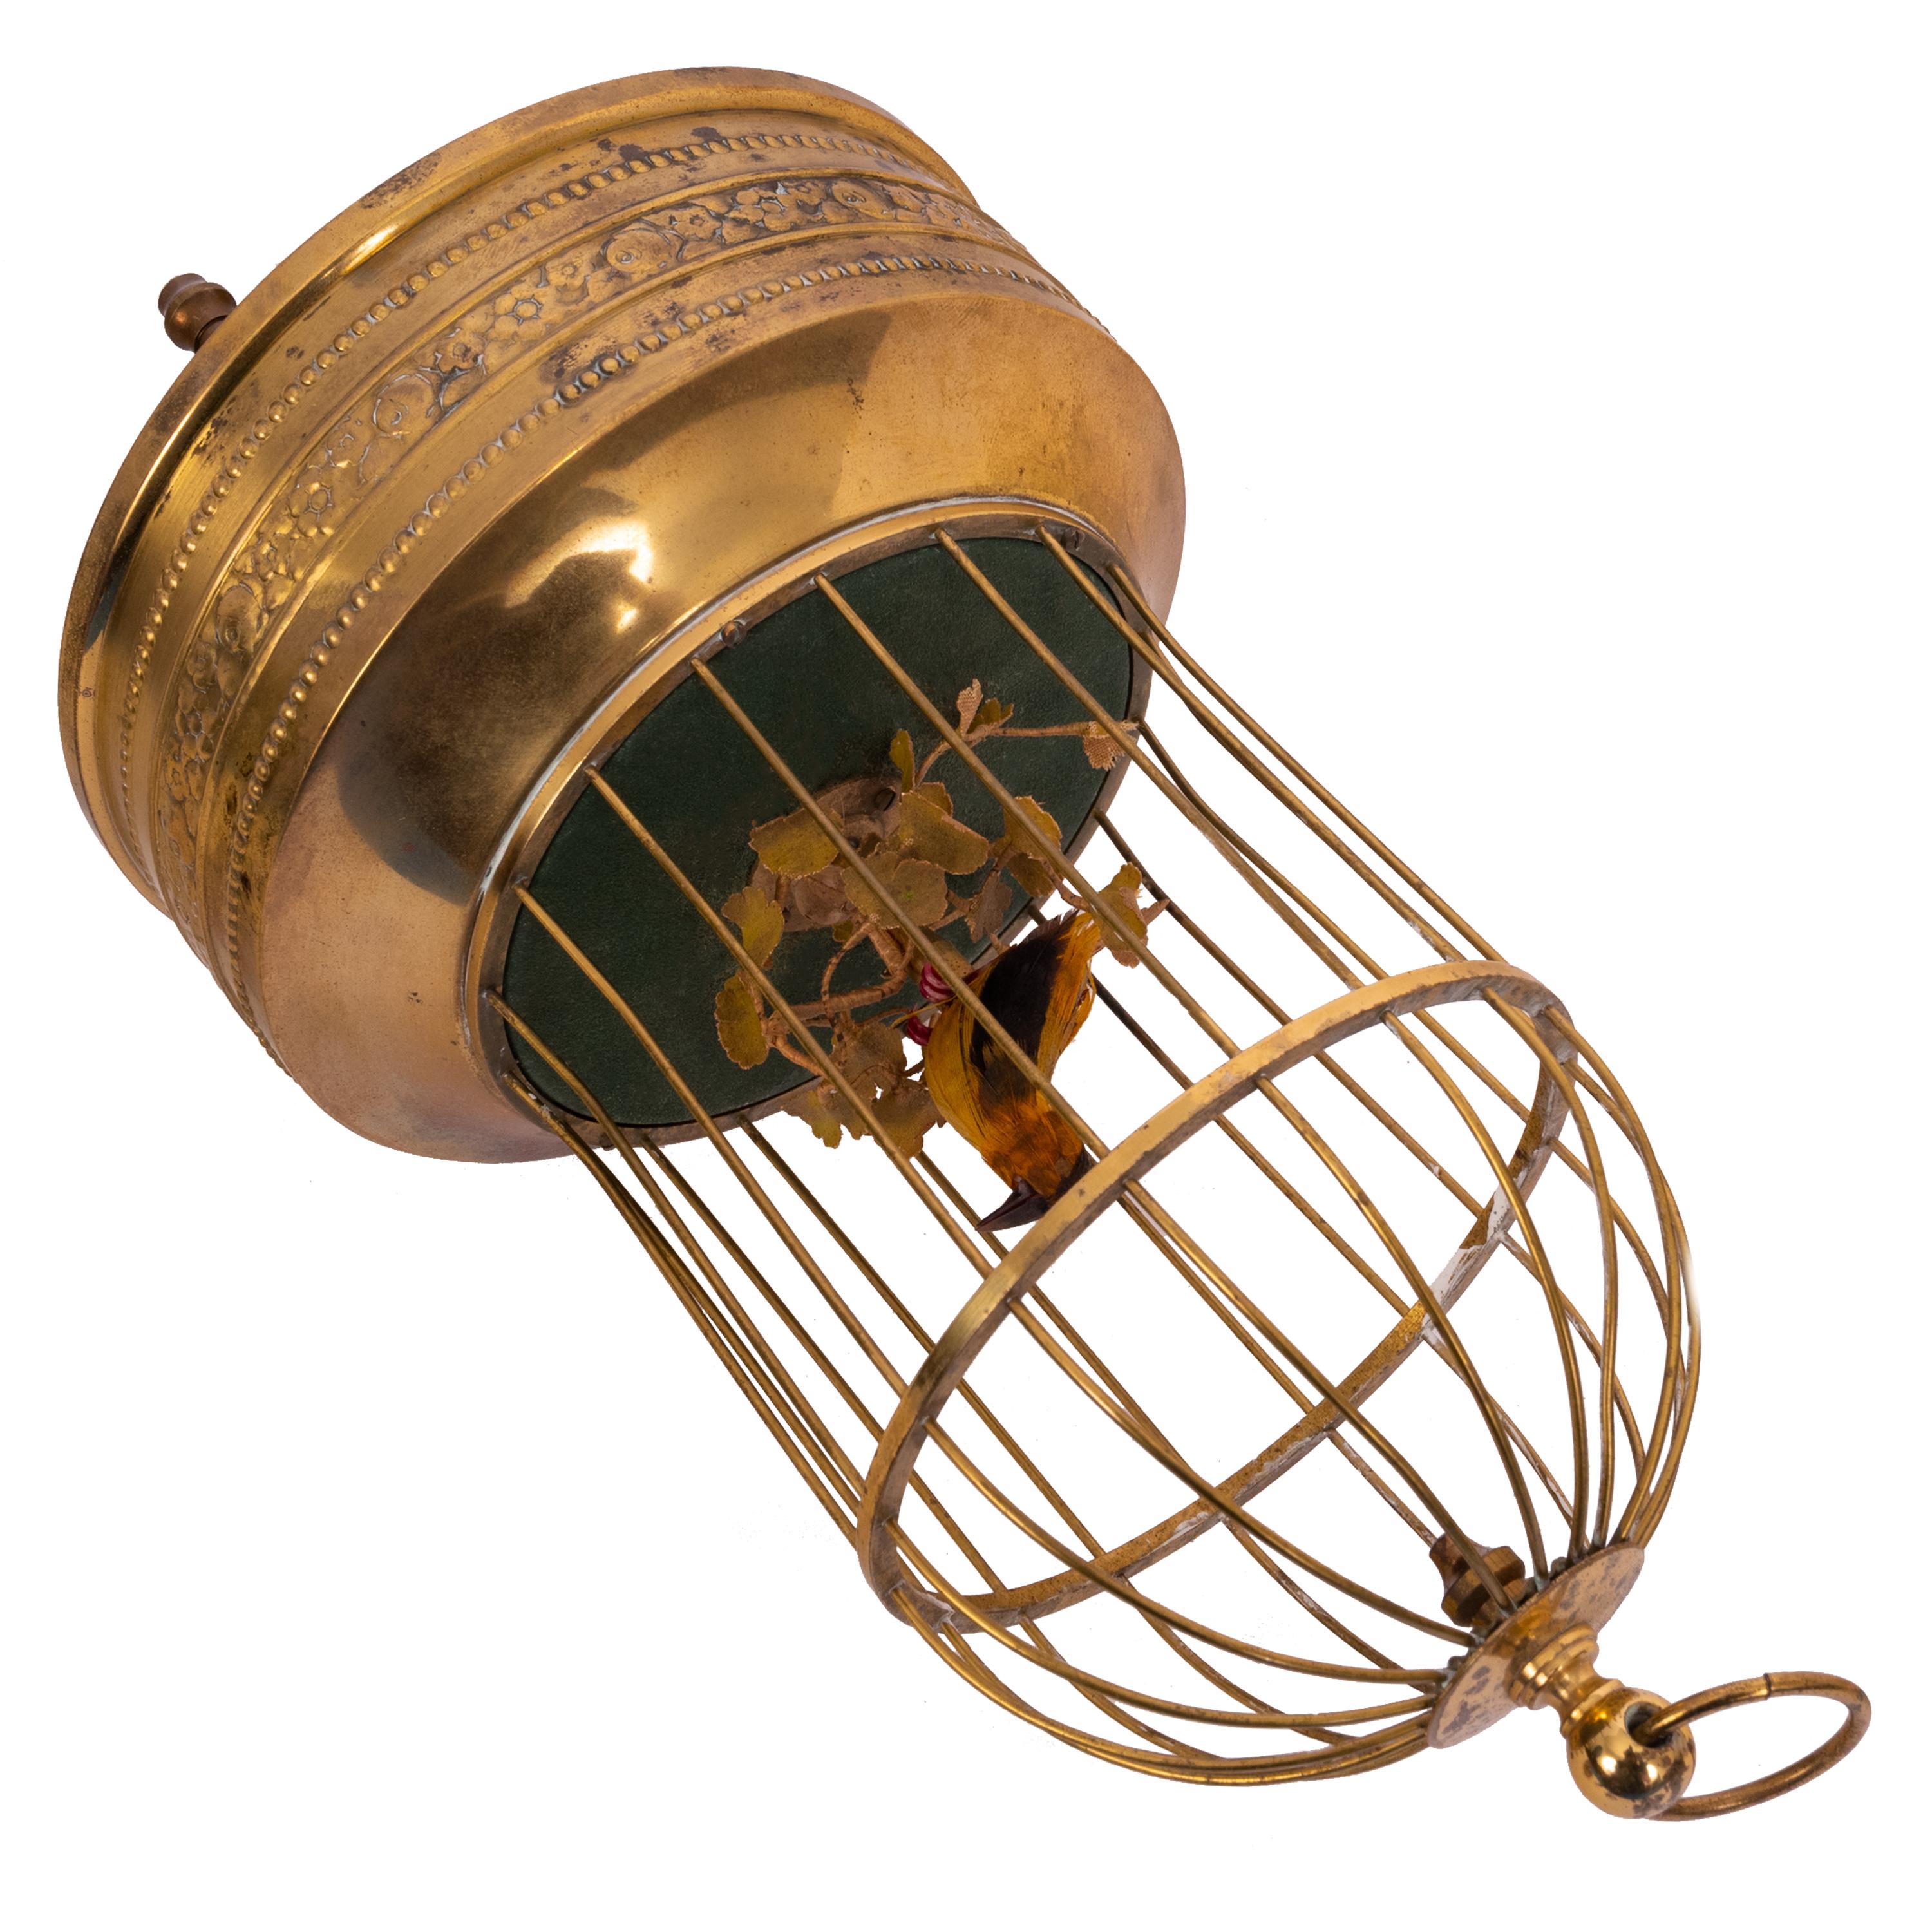 Brass Antique German Singing Bird in a Cage Music Box Automaton Karl Griesbaum 1930